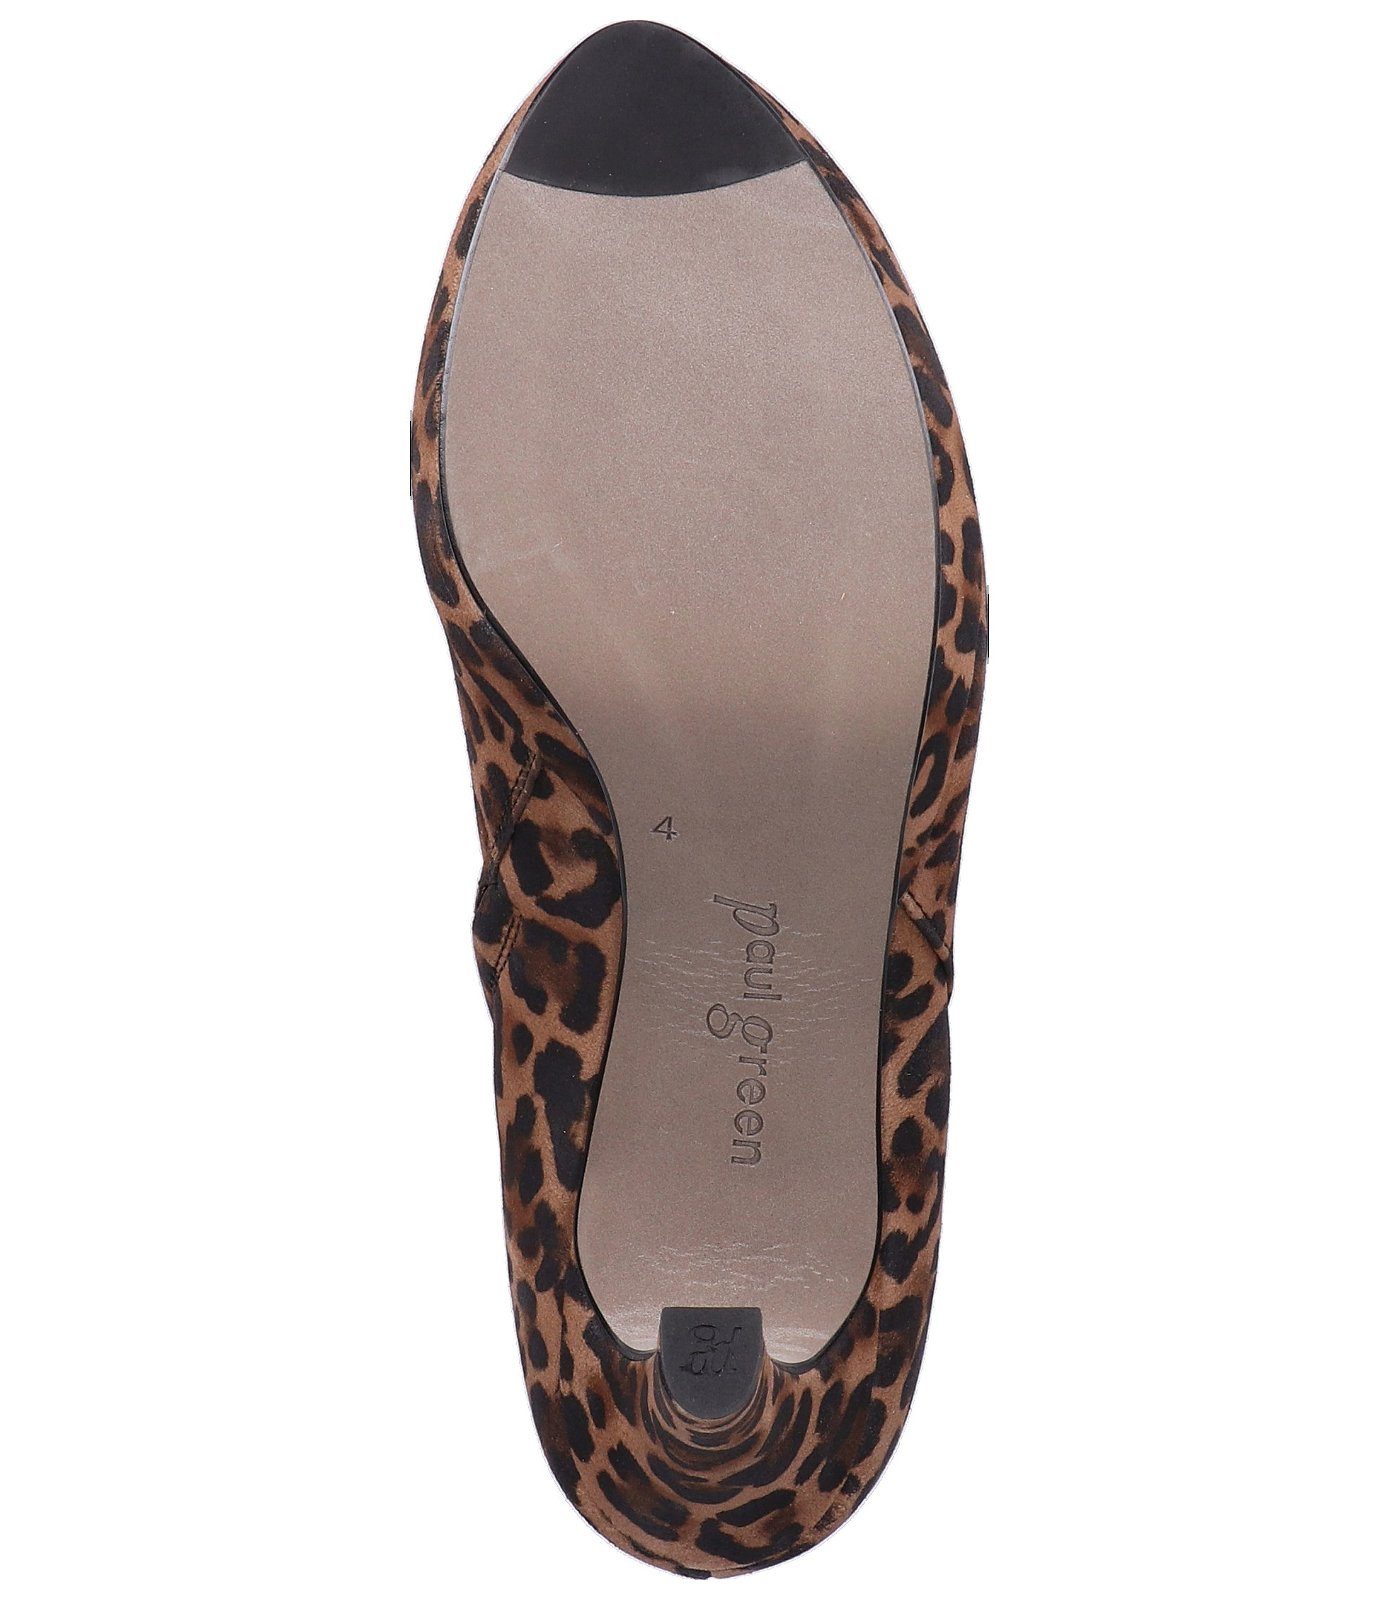 Paul Green Stiefelette Leder Leopard High-Heel-Stiefelette